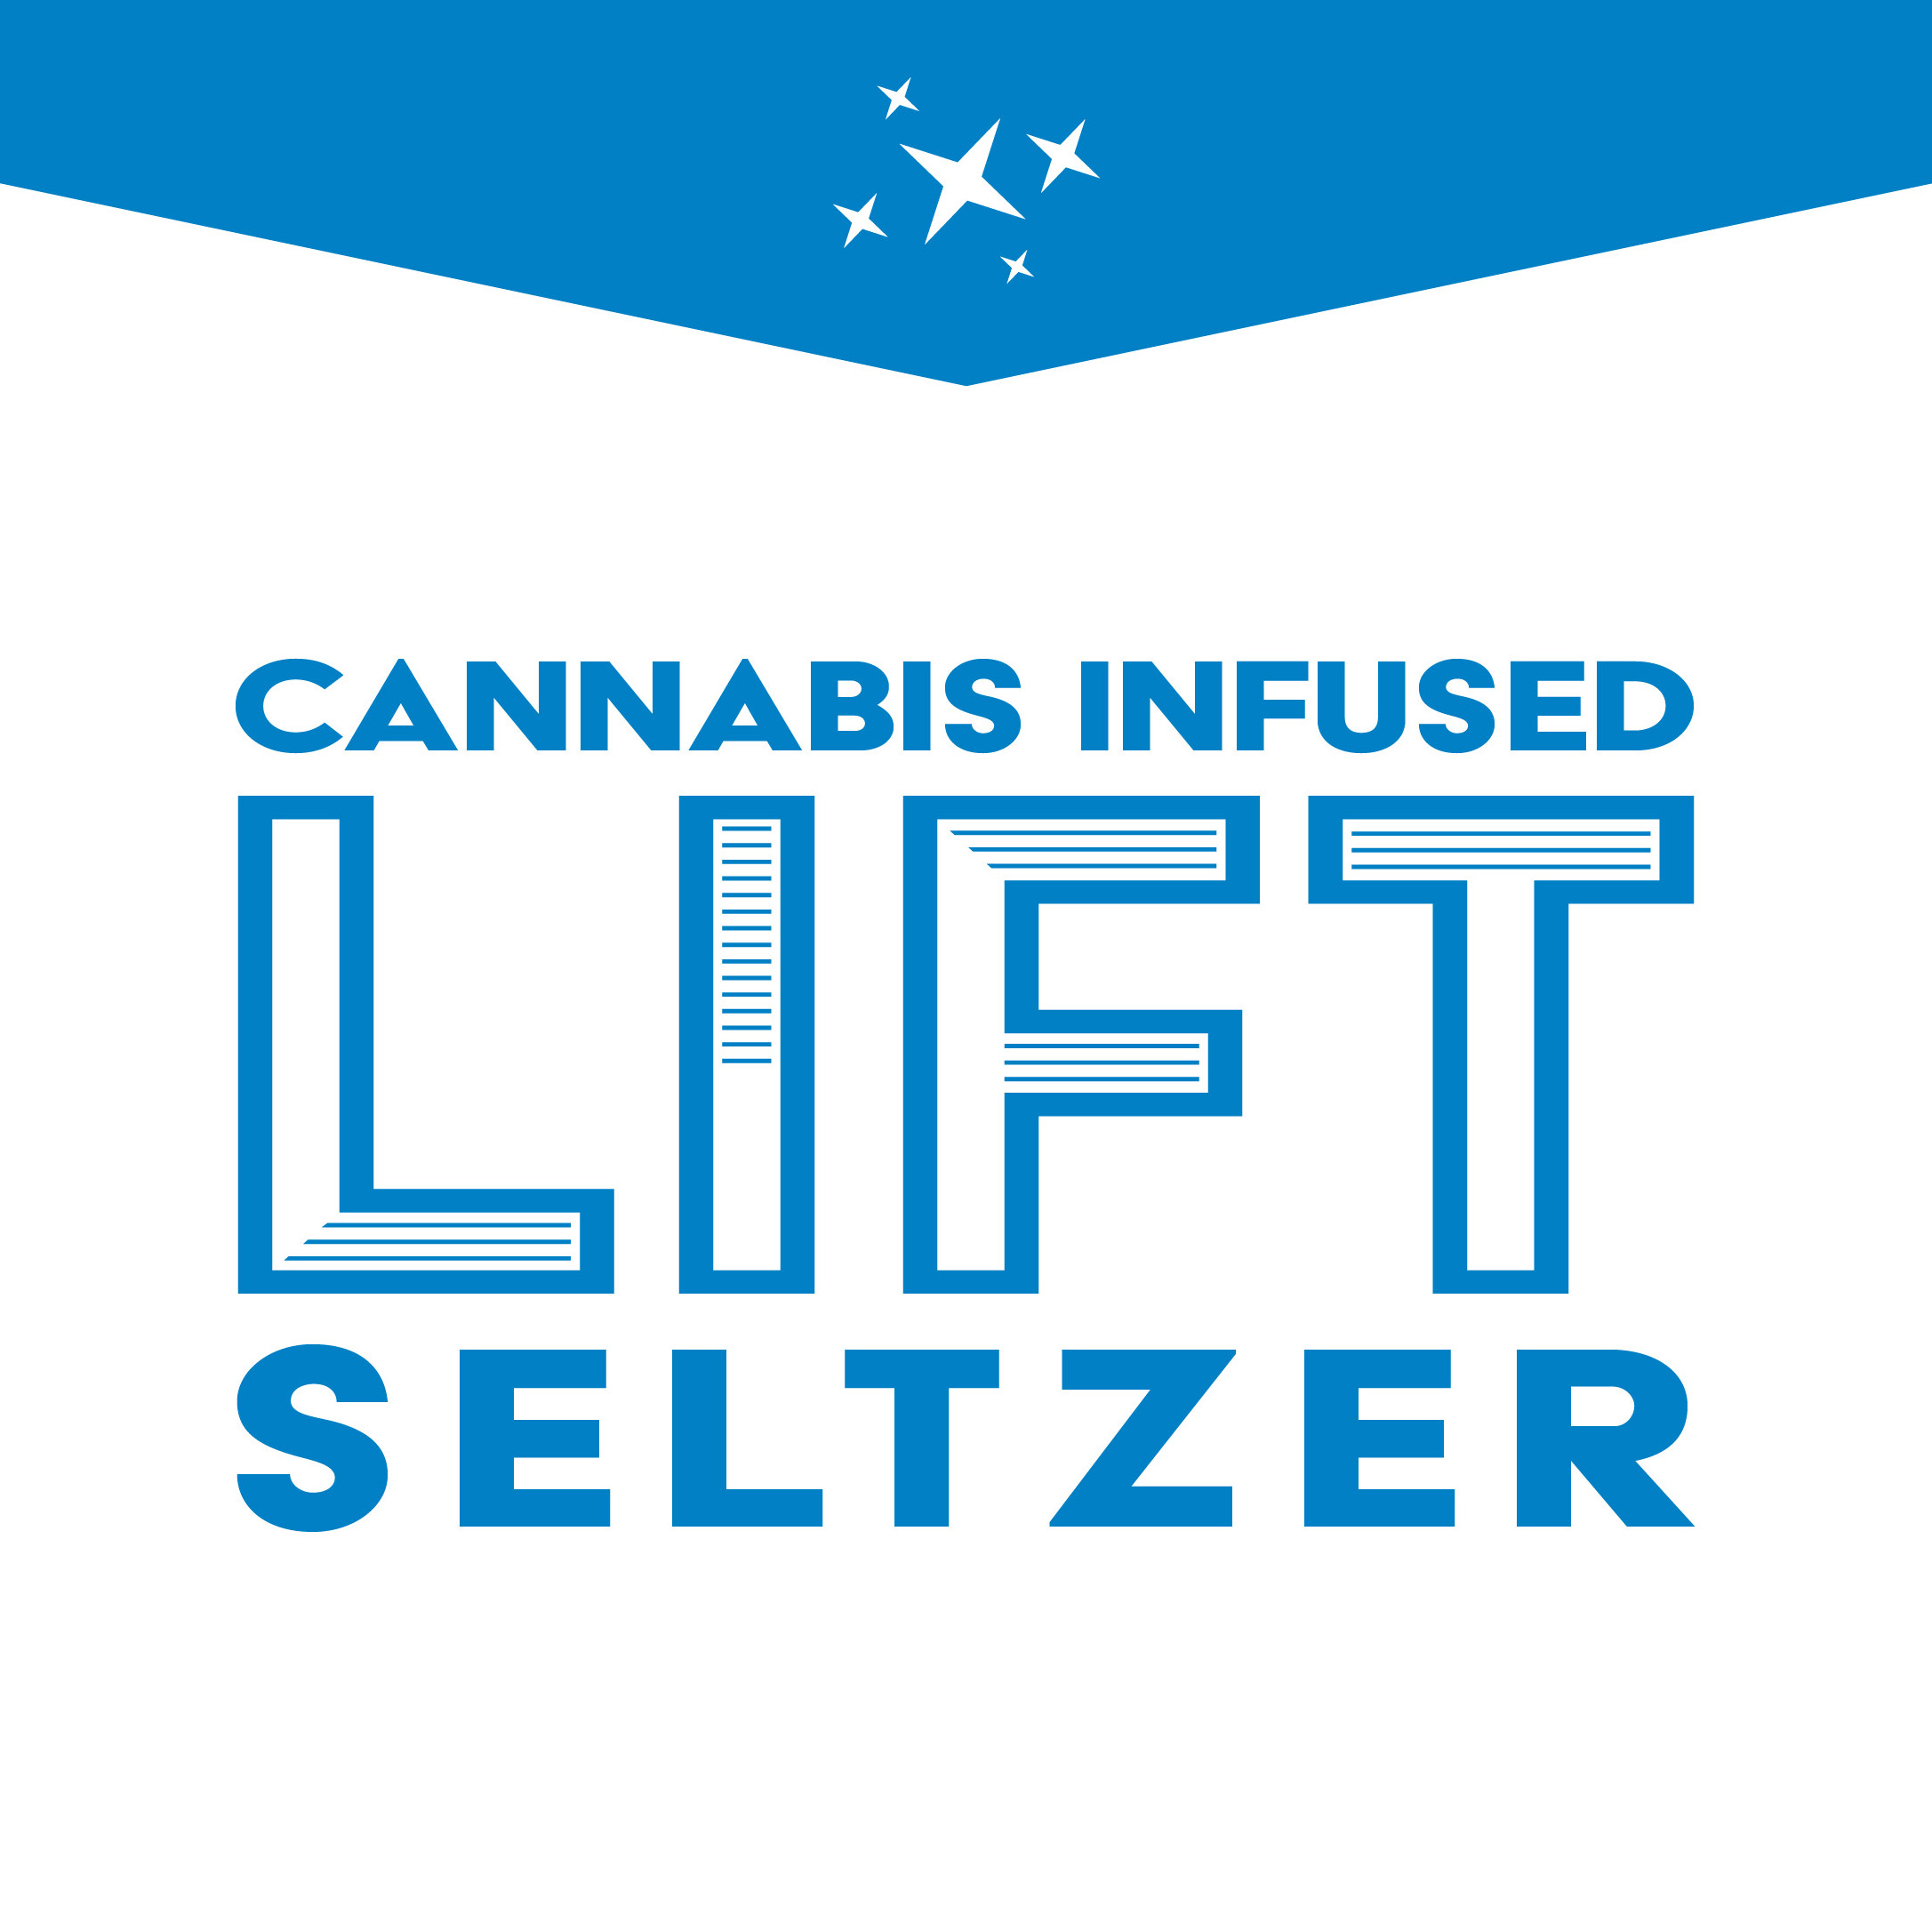 Lift Seltzer